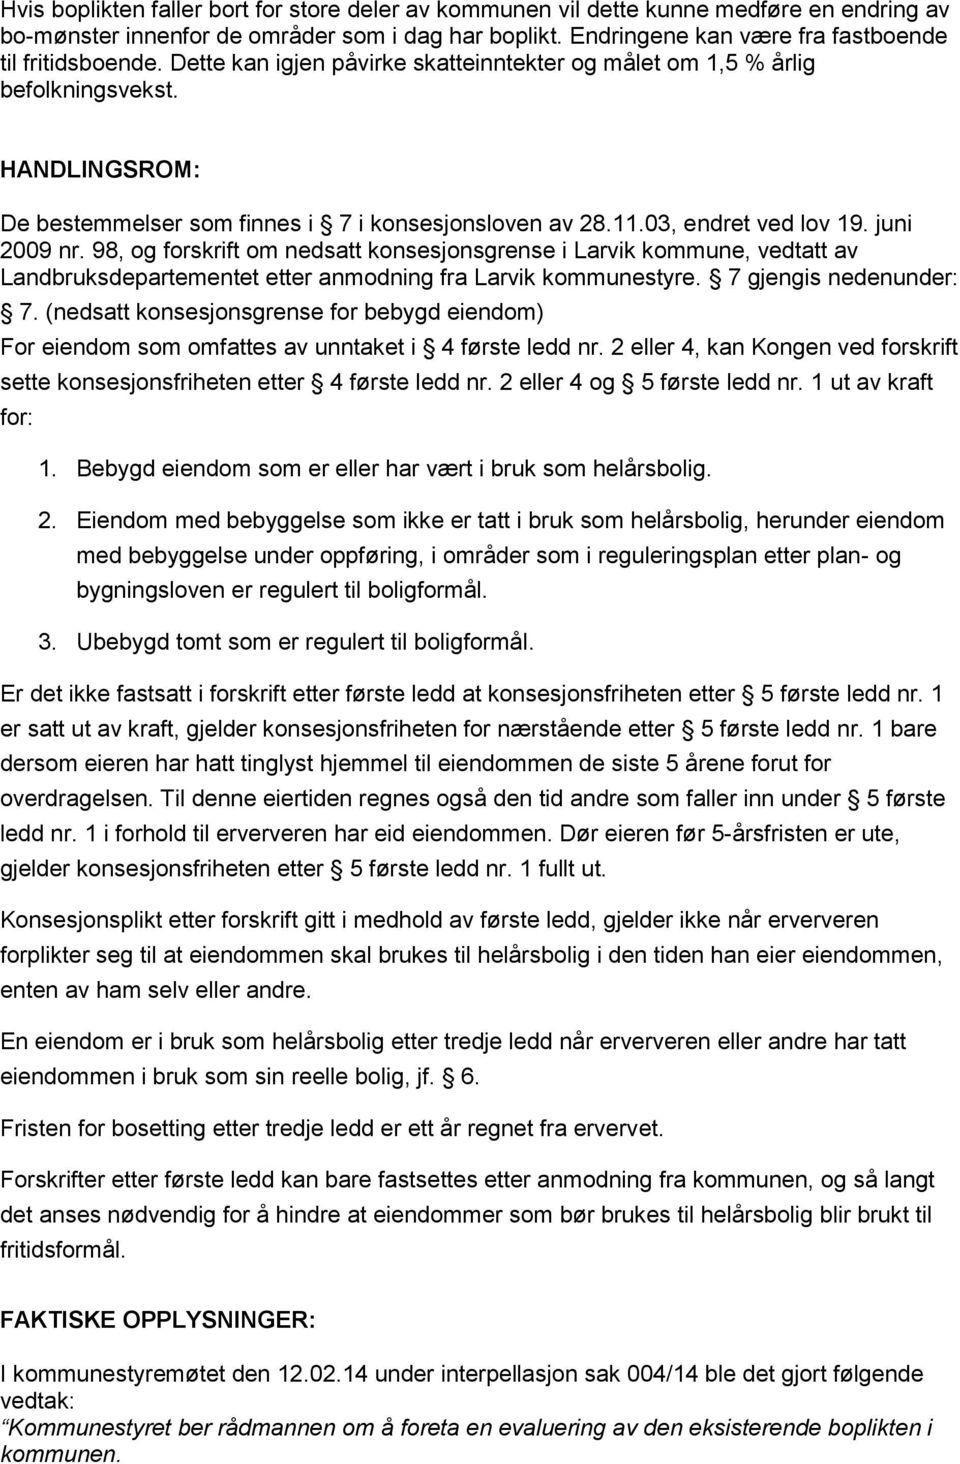 98, og forskrift om nedsatt konsesjonsgrense i Larvik kommune, vedtatt av Landbruksdepartementet etter anmodning fra Larvik kommunestyre. 7 gjengis nedenunder: 7.